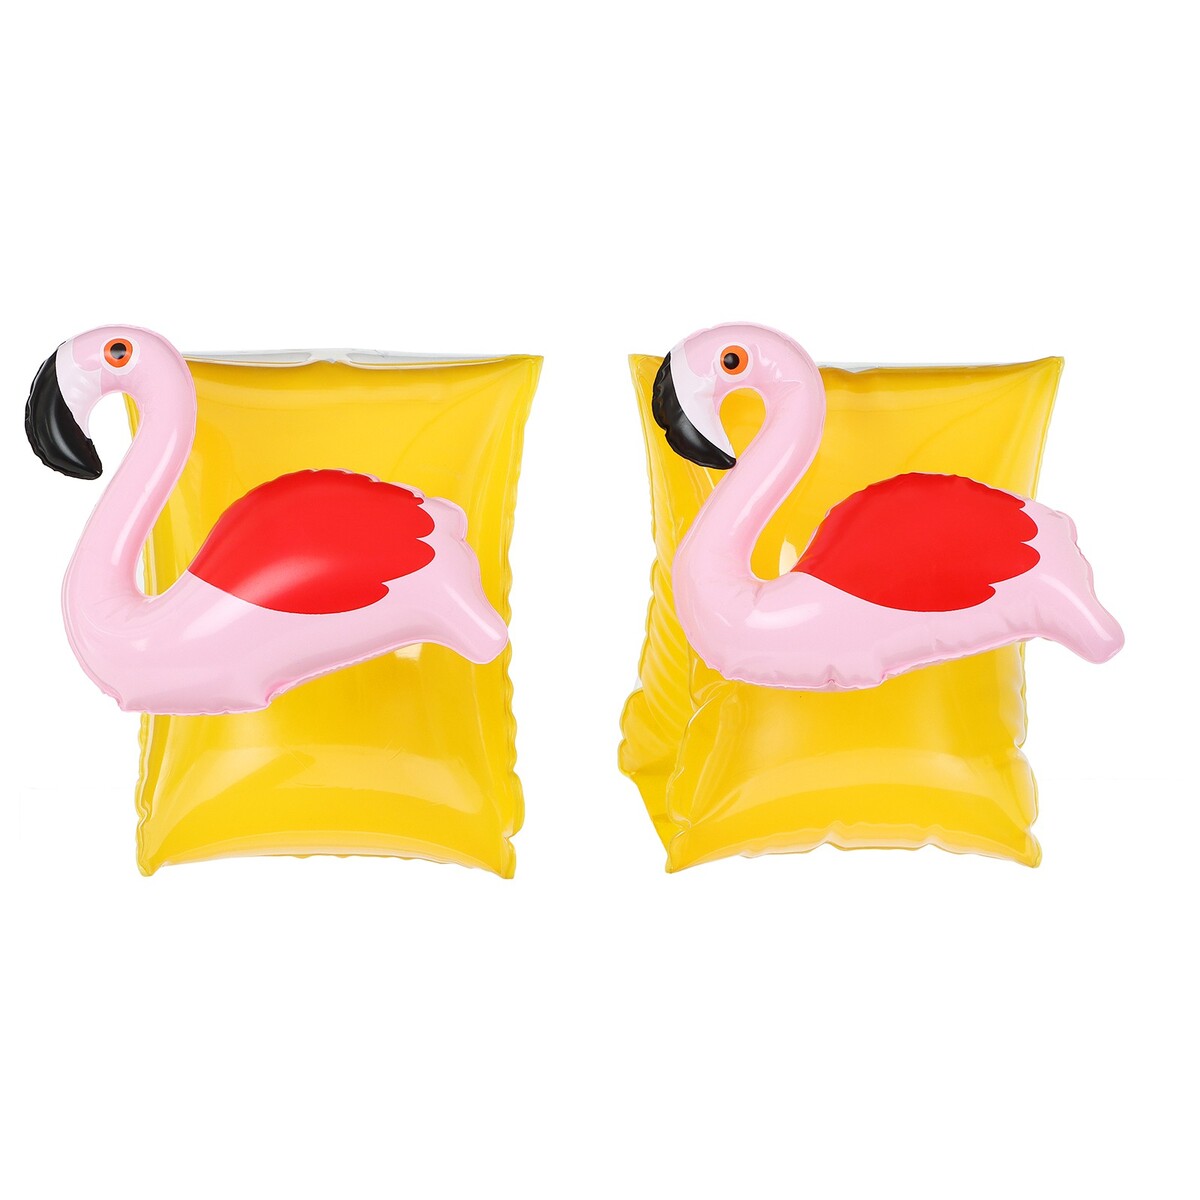 Нарукавники детские надувные нарукавники надувные baziator детские розовый фламинго 2 шт от 1 до 5 лет s0035a